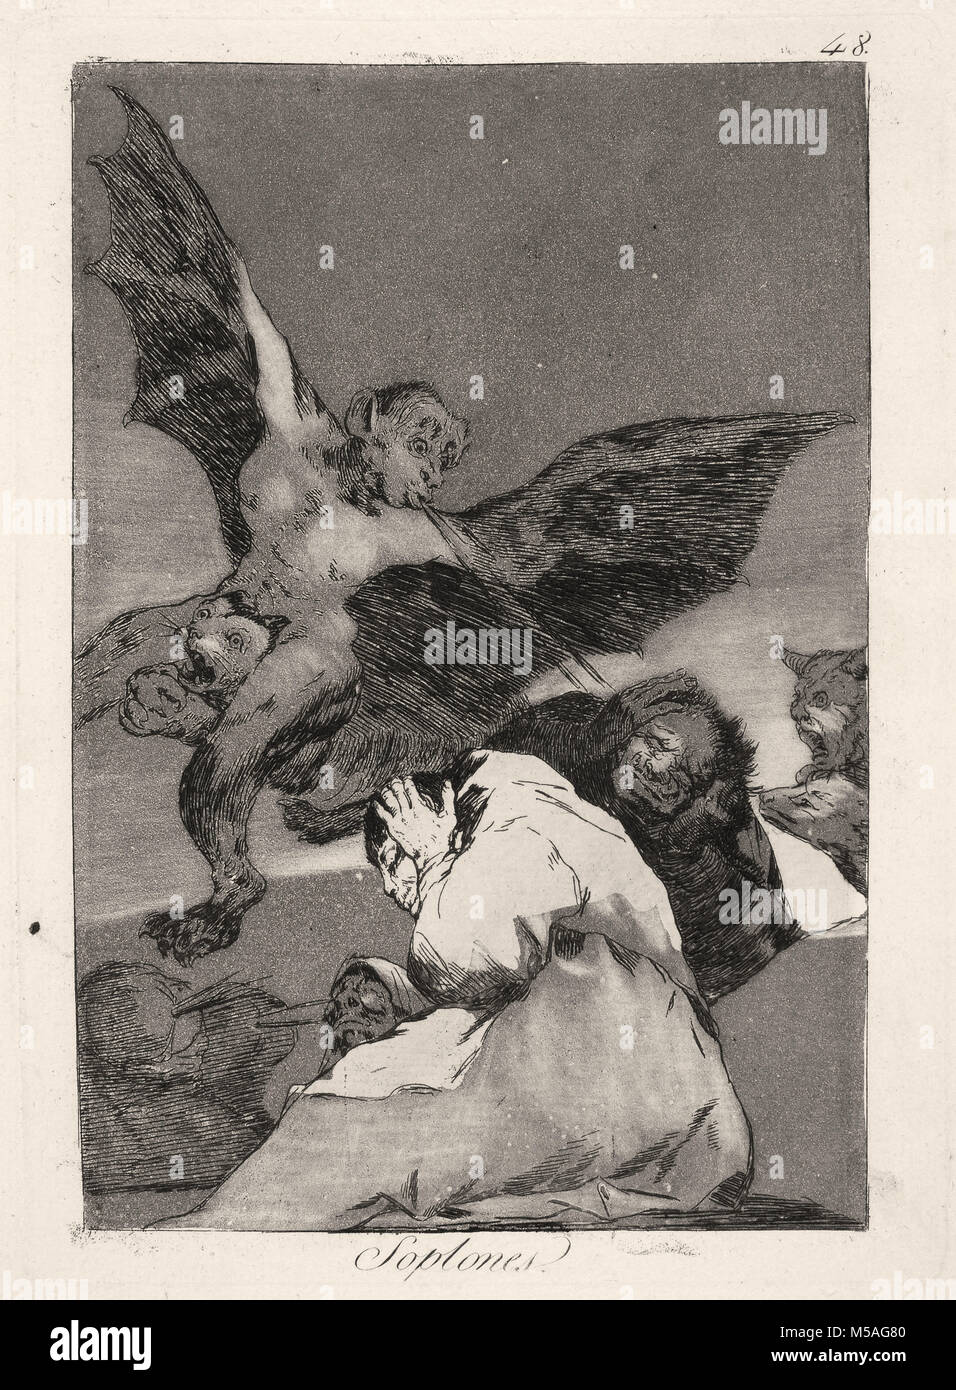 Francisco de Goya - Los Caprichos - No. 48 - Soplones Stock Photo